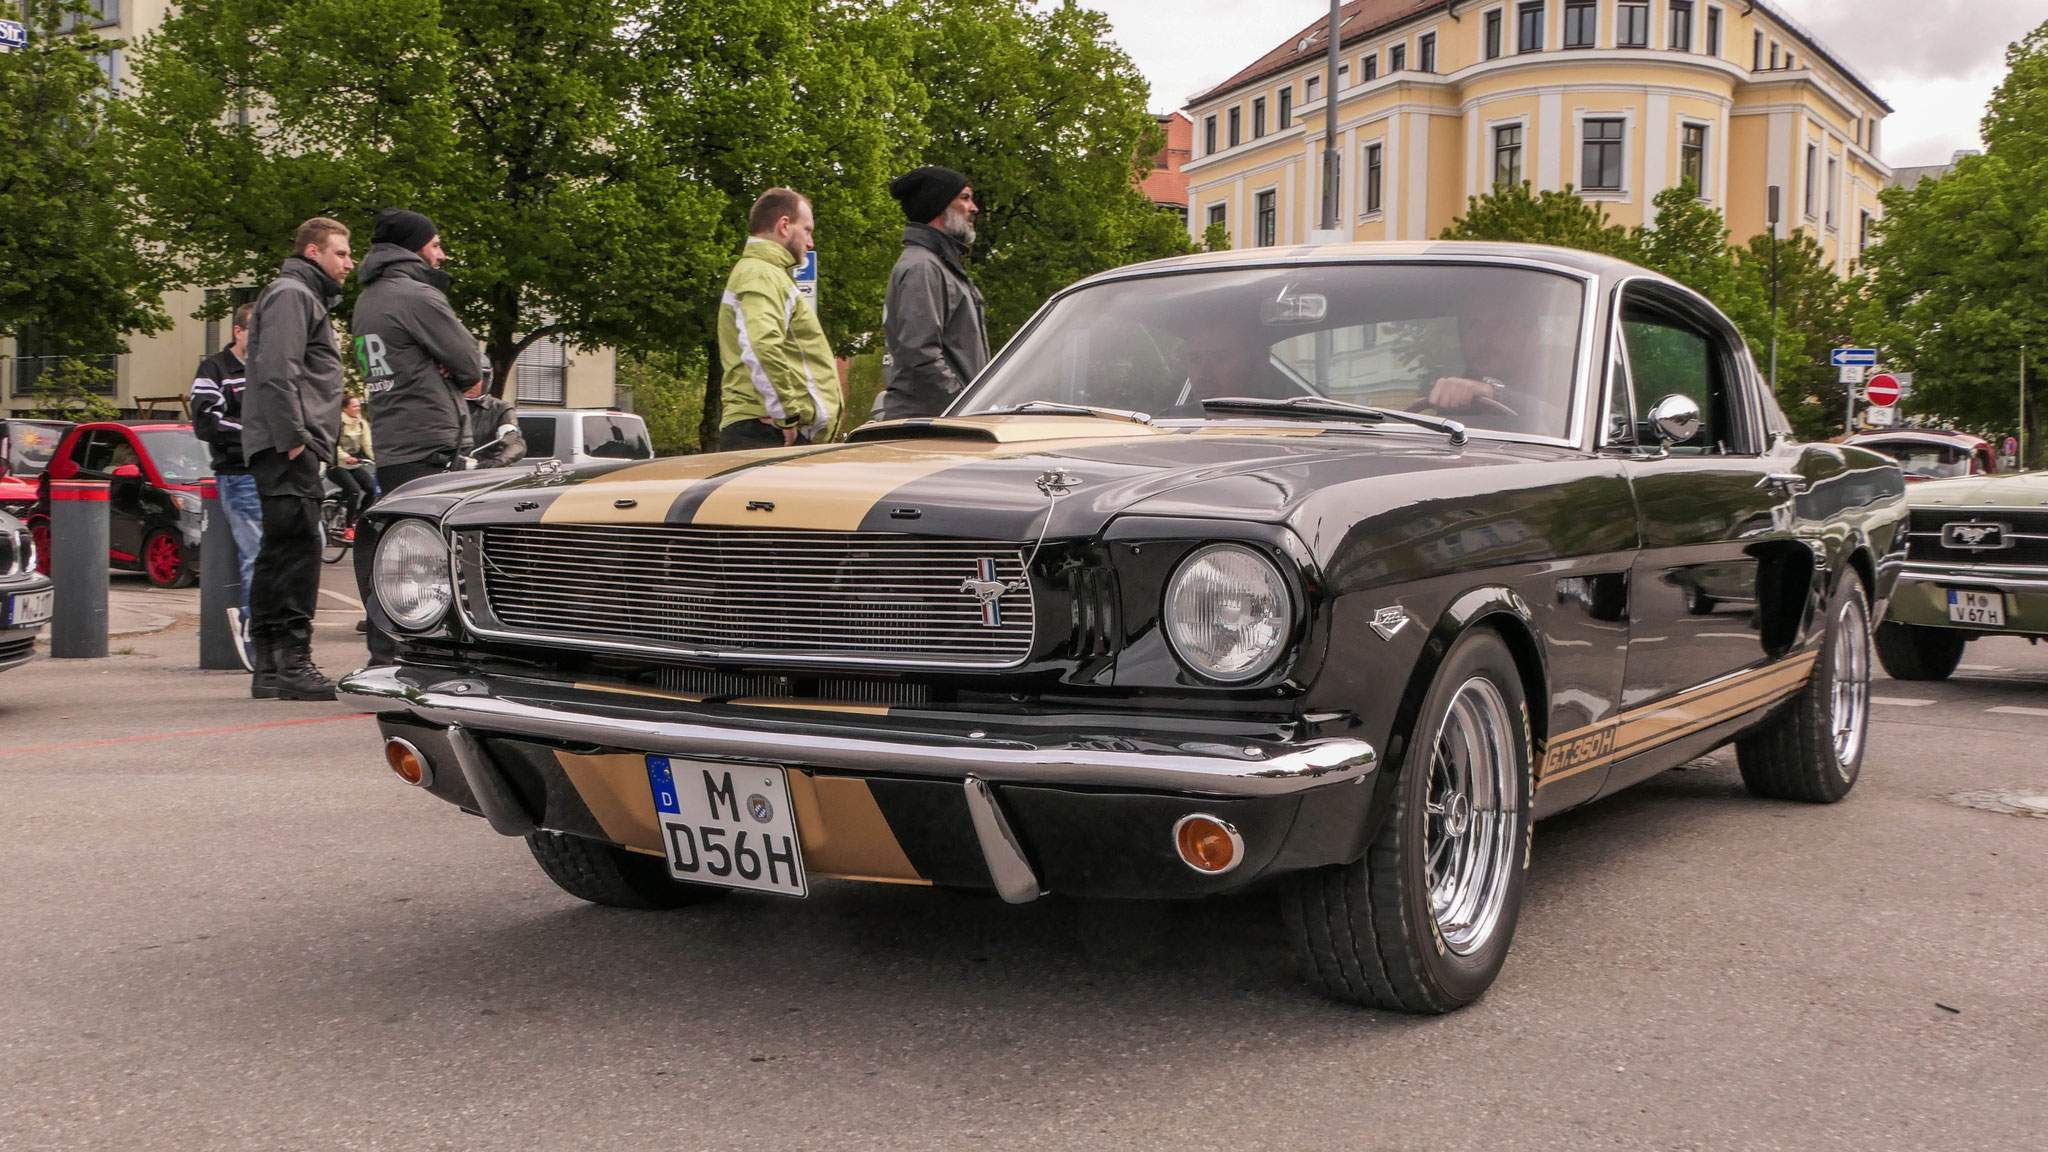 Mustang I GT 350 - M-D56H